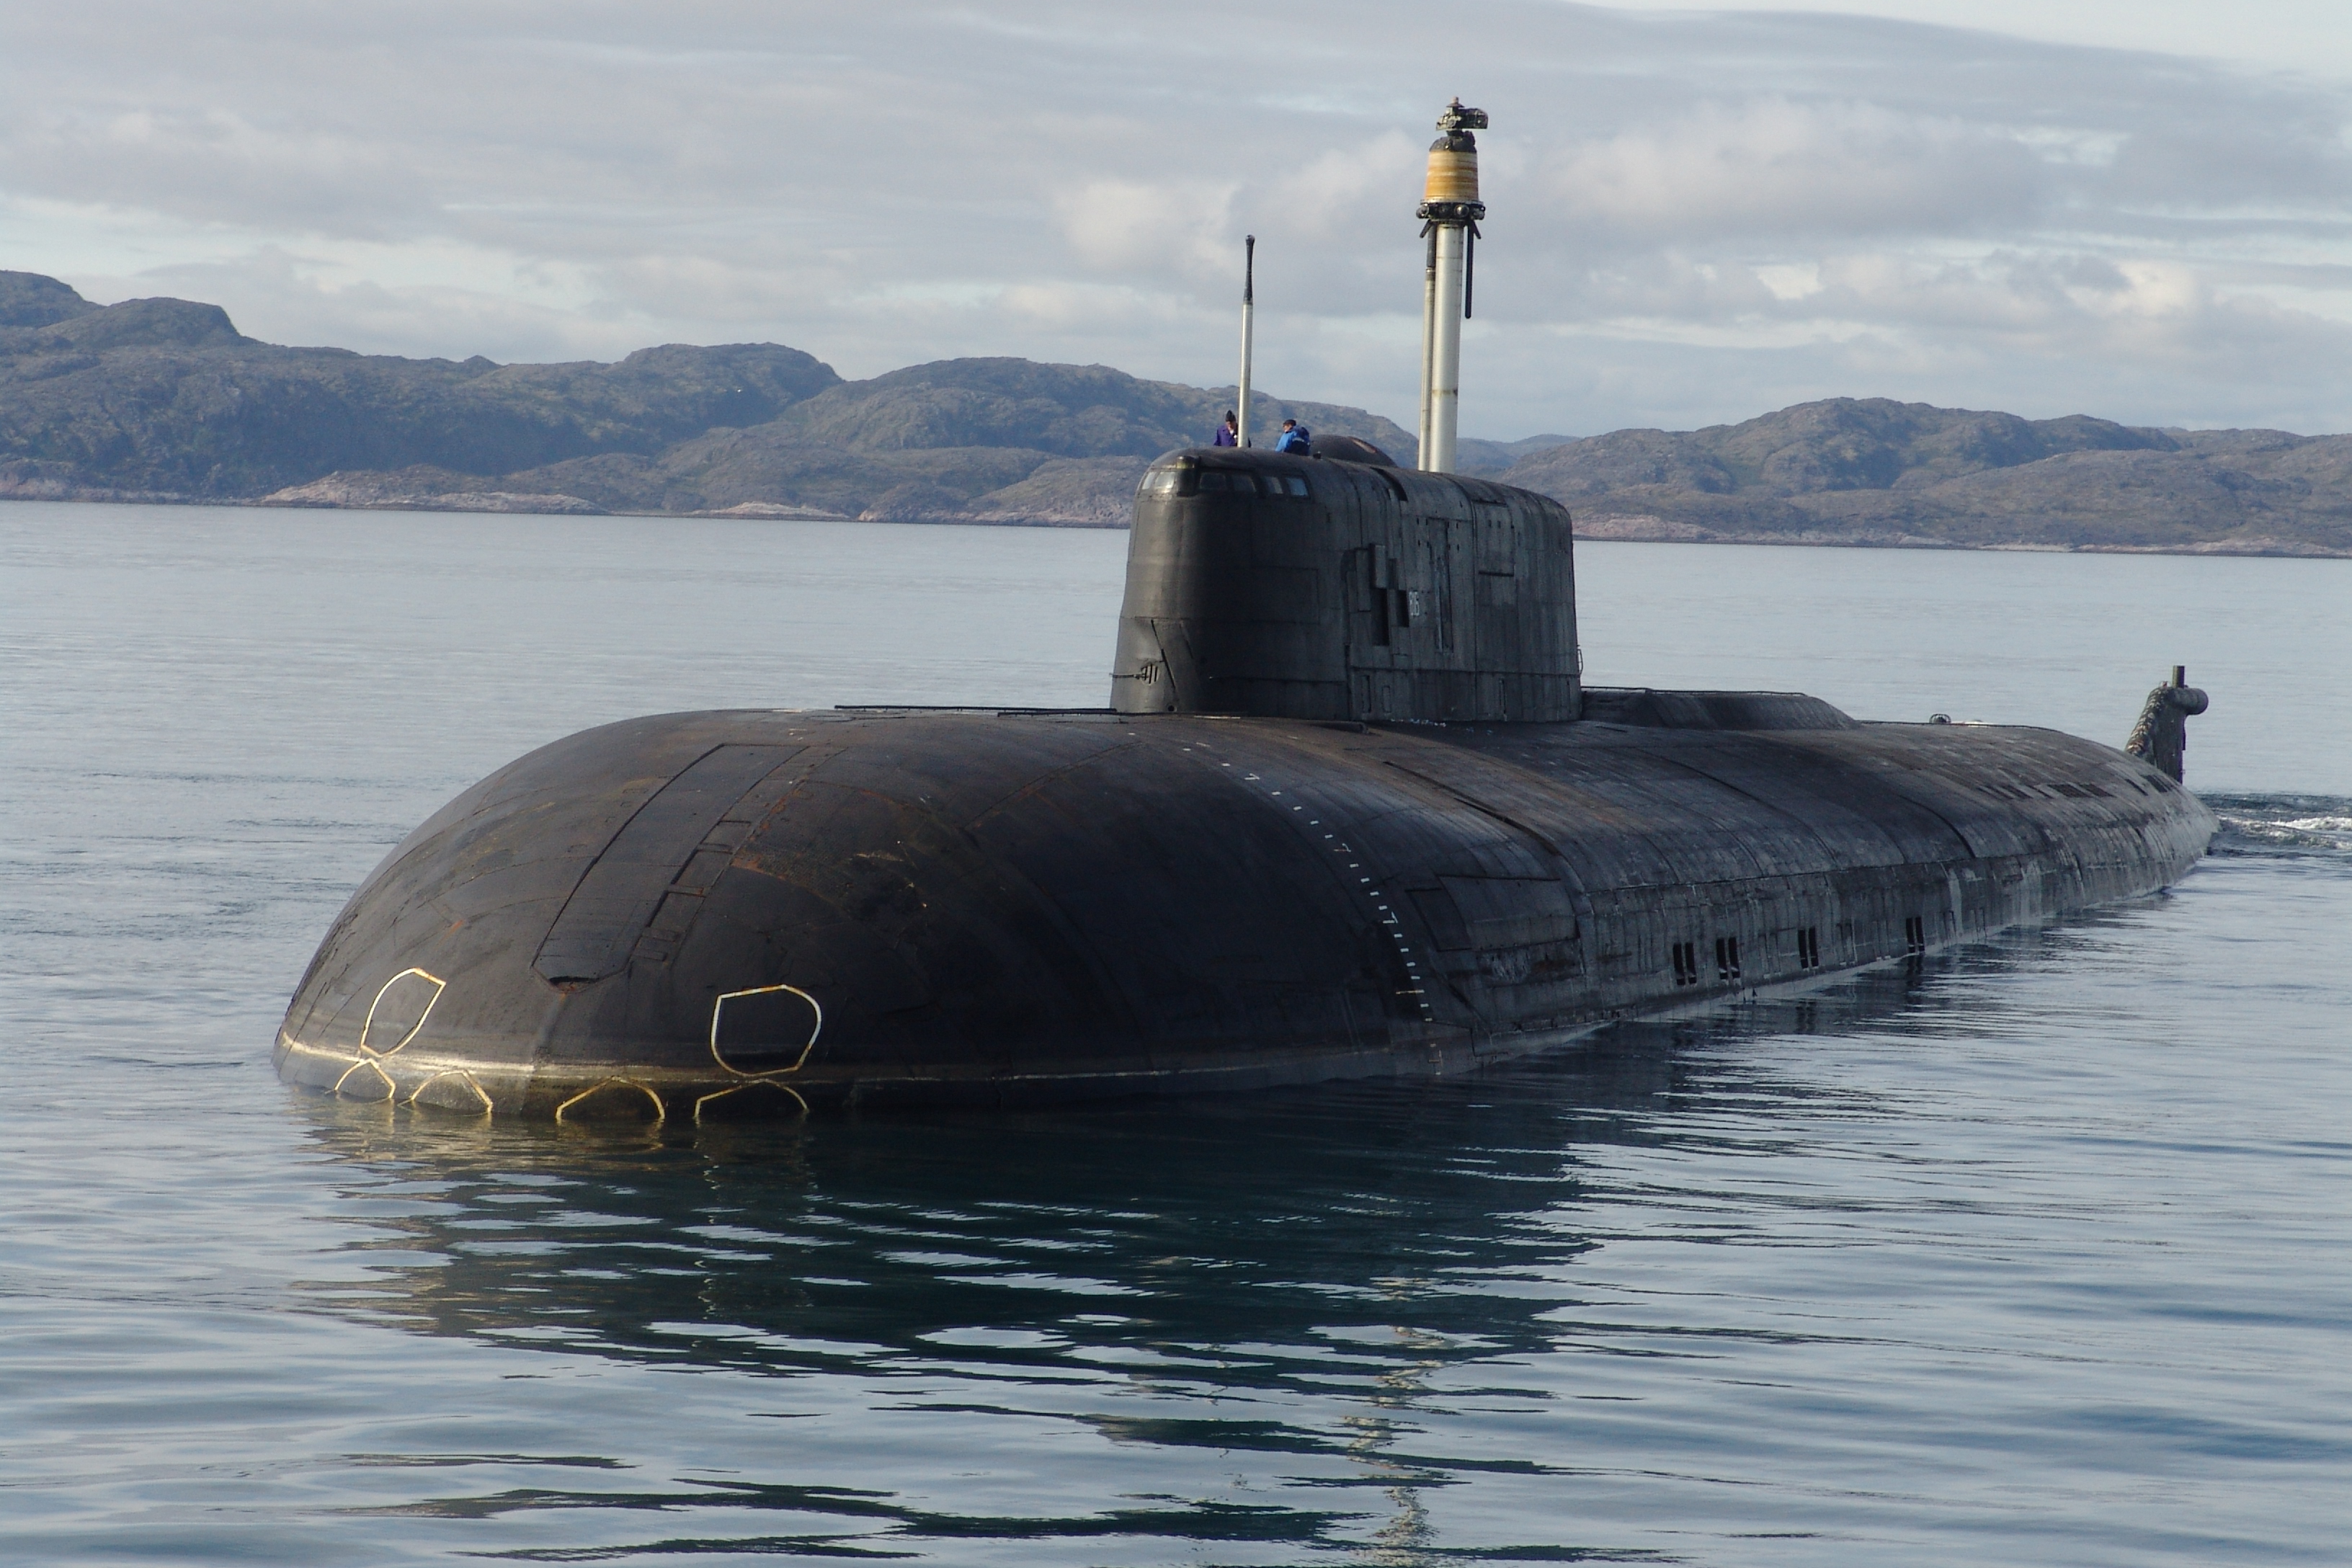 Пл c. Лодки 949а Антей. Подводные лодки проекта 949а «Антей». Атомный подводный крейсер к-186 "Омск". Проект 949а подводная лодка.